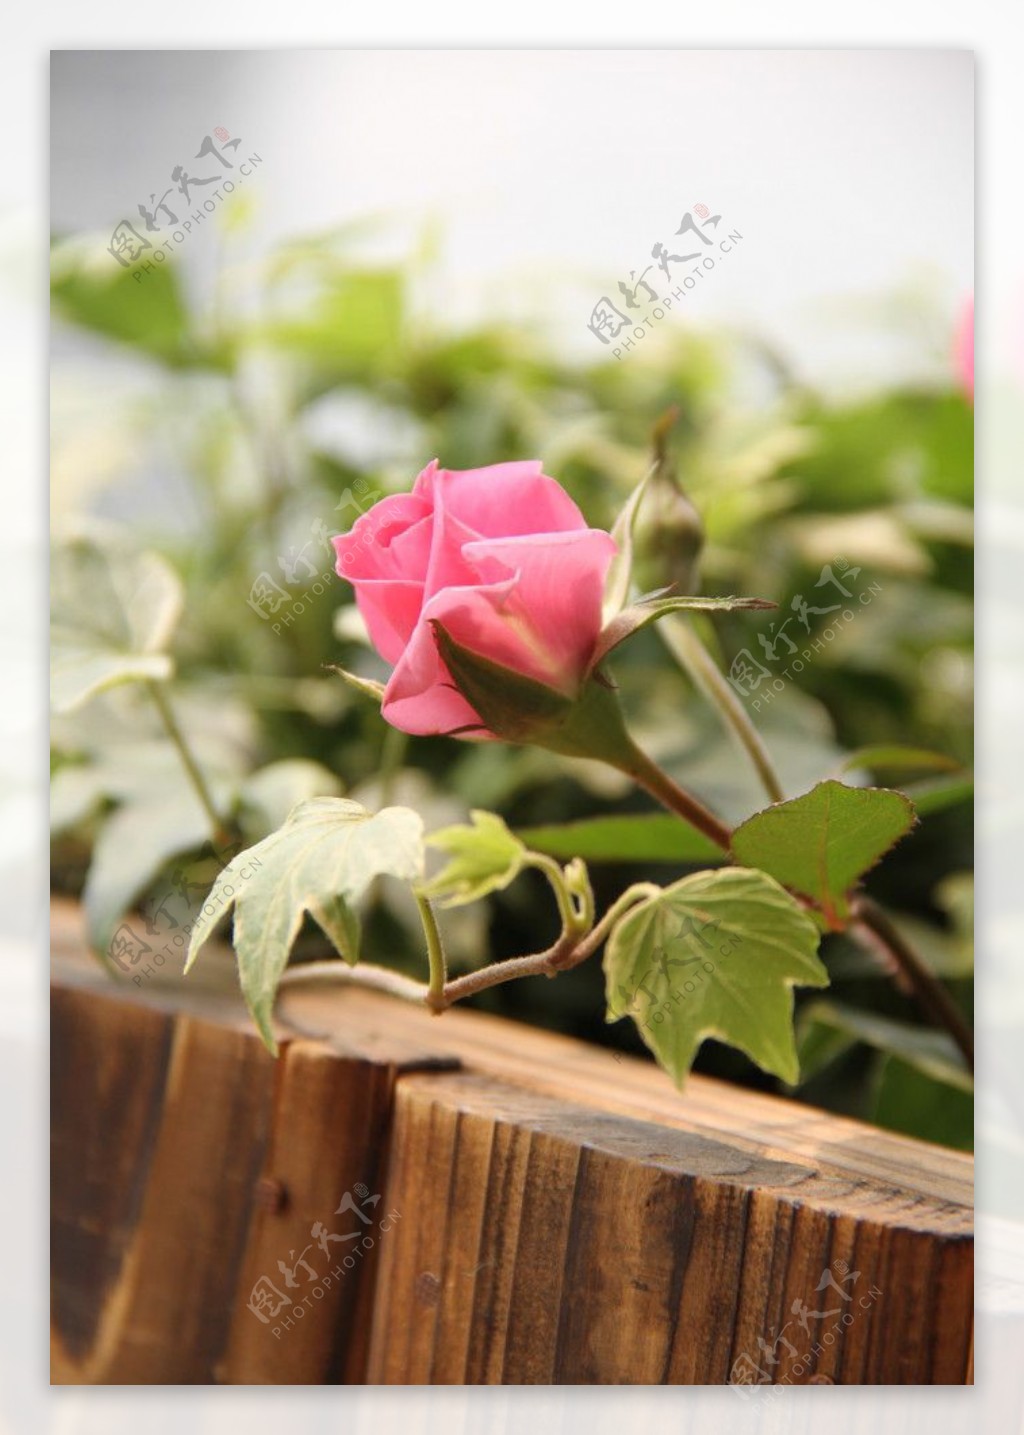 花圃中玫瑰花蕾图片